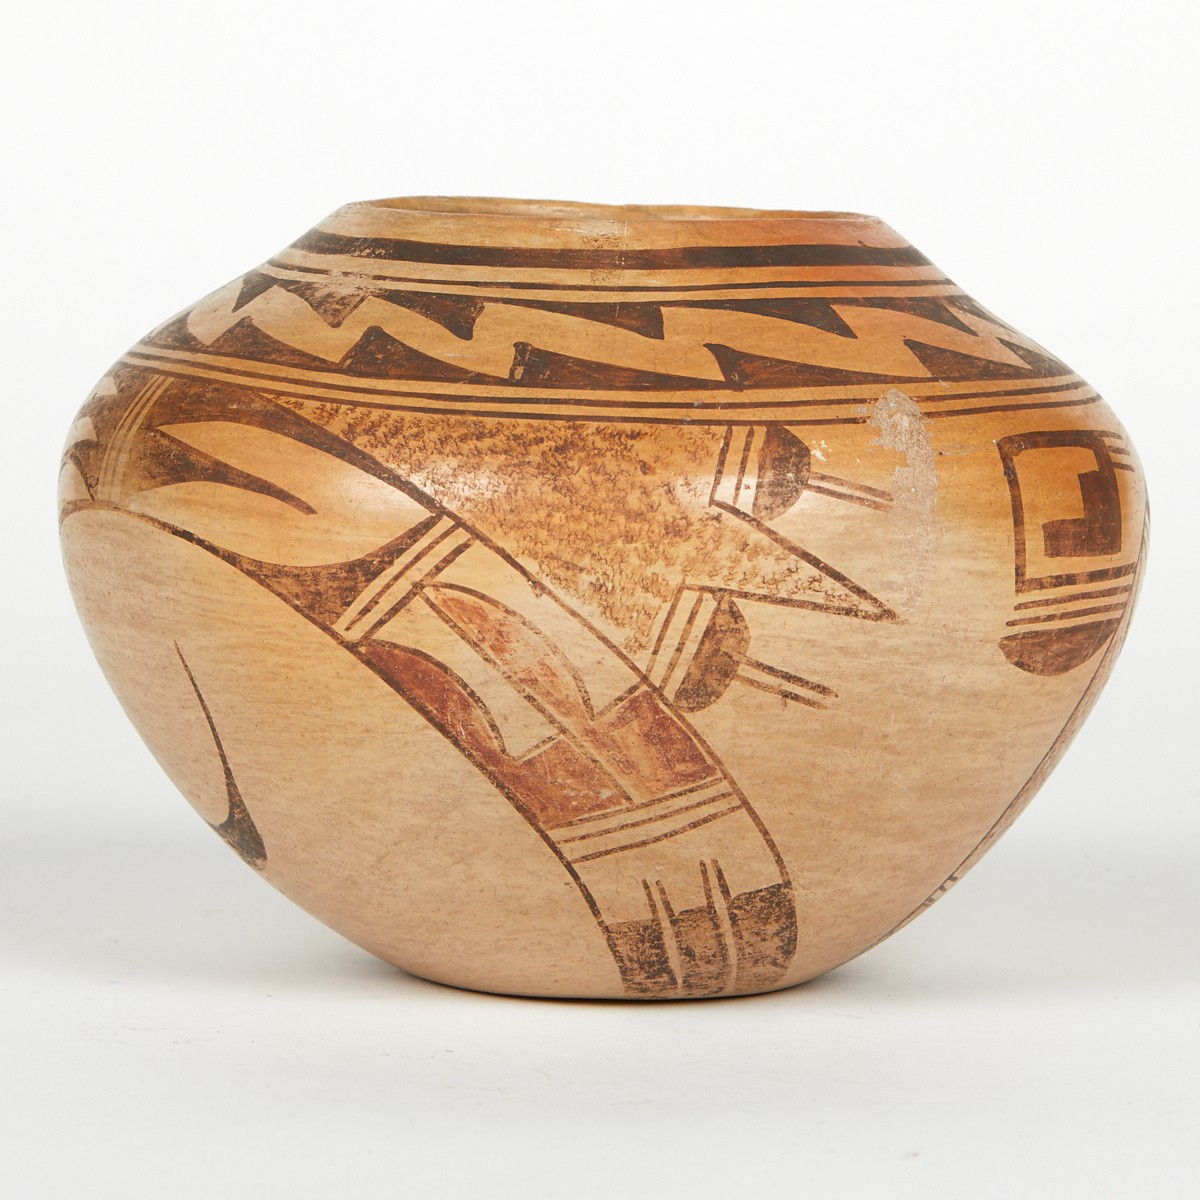 Poss. Nampeyo Family Hopi Ceramic Pot - Image 4 of 6